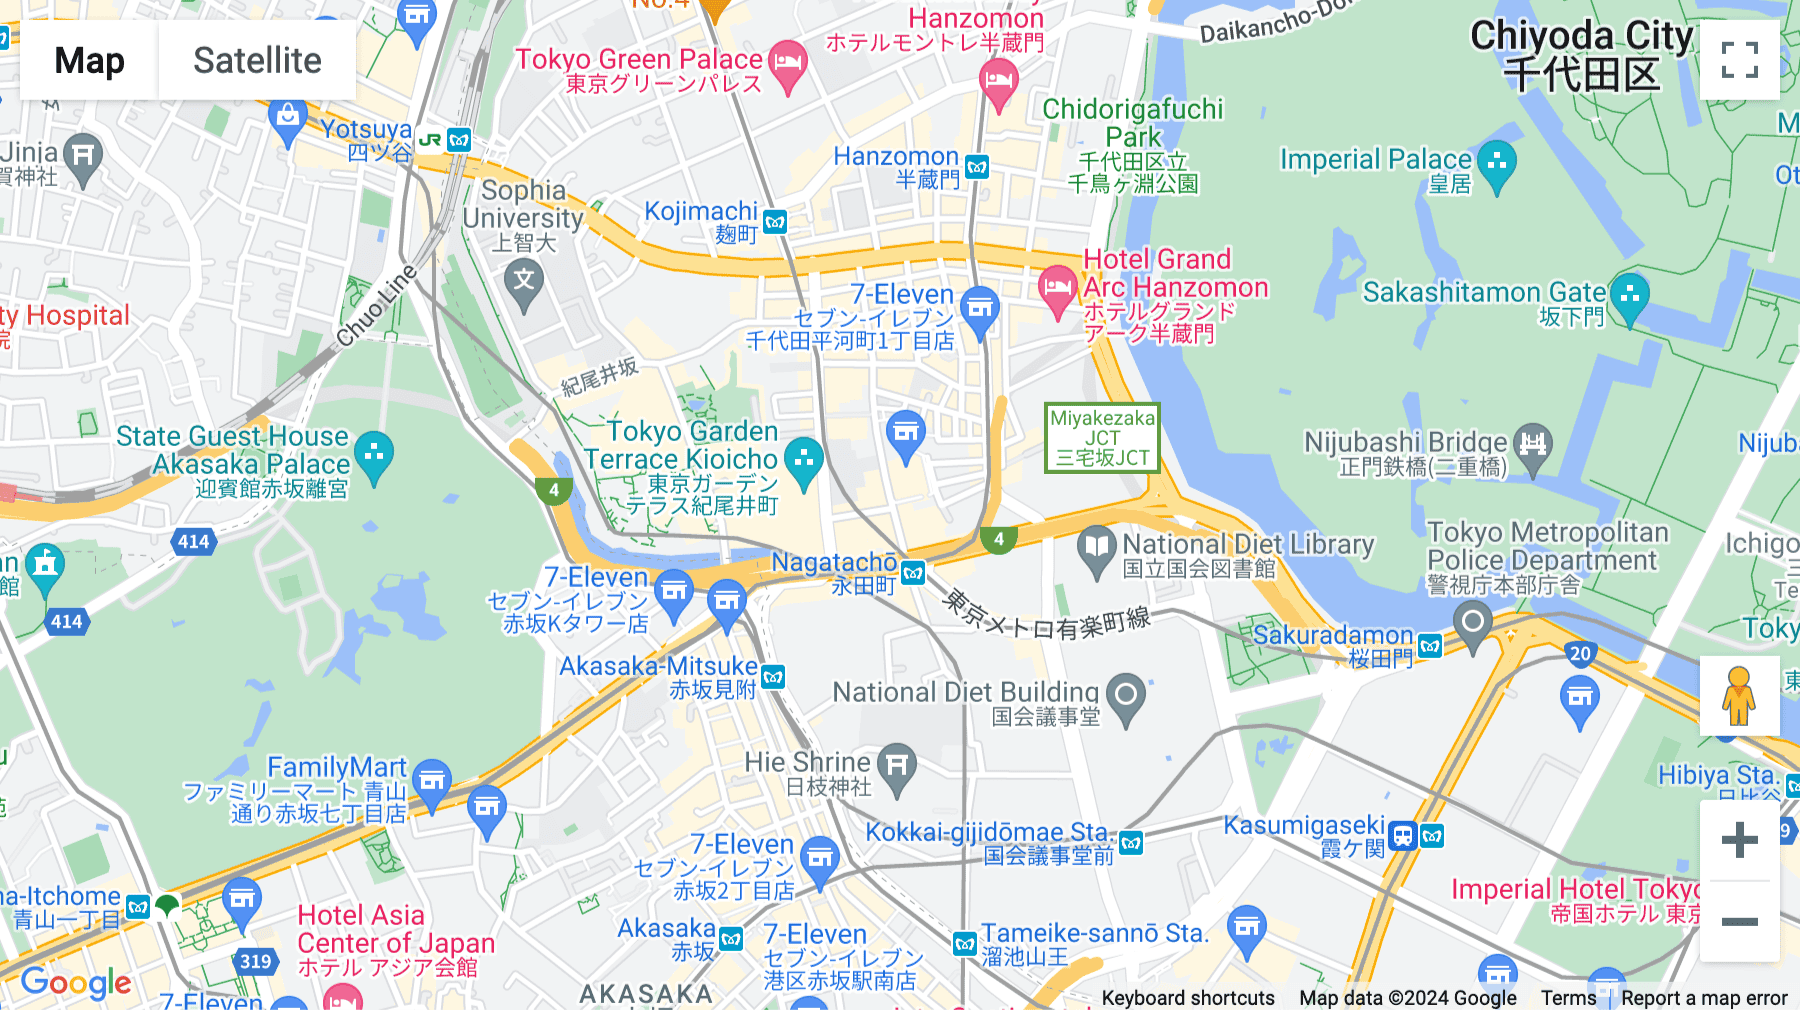 Click for interative map of Nagatacho GRiD 2-5-3 Hirakawa-cho, Tokyo